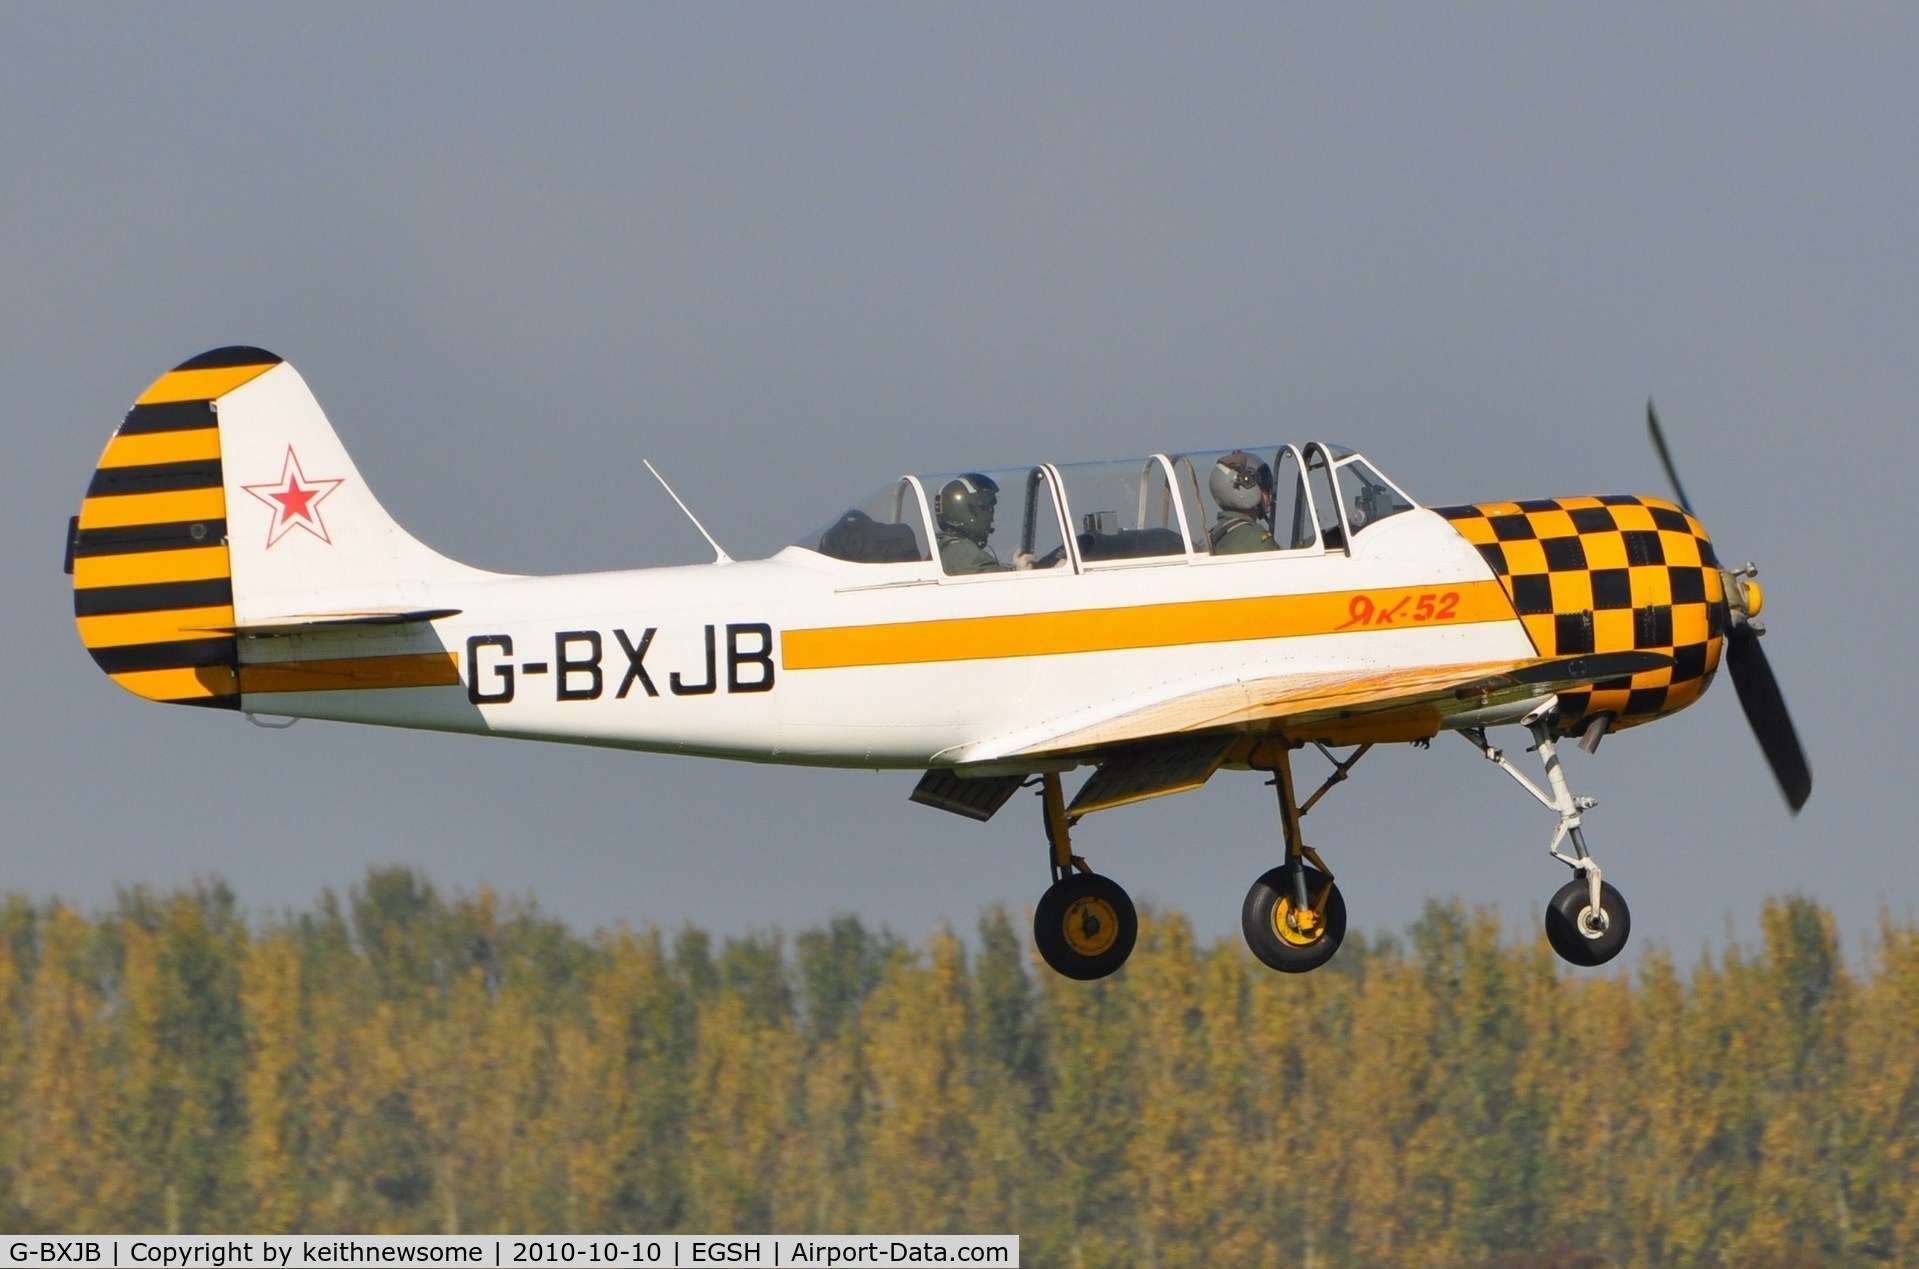 G-BXJB, 1987 Bacau Yak-52 C/N 877403, A regular visitor in 2010 !